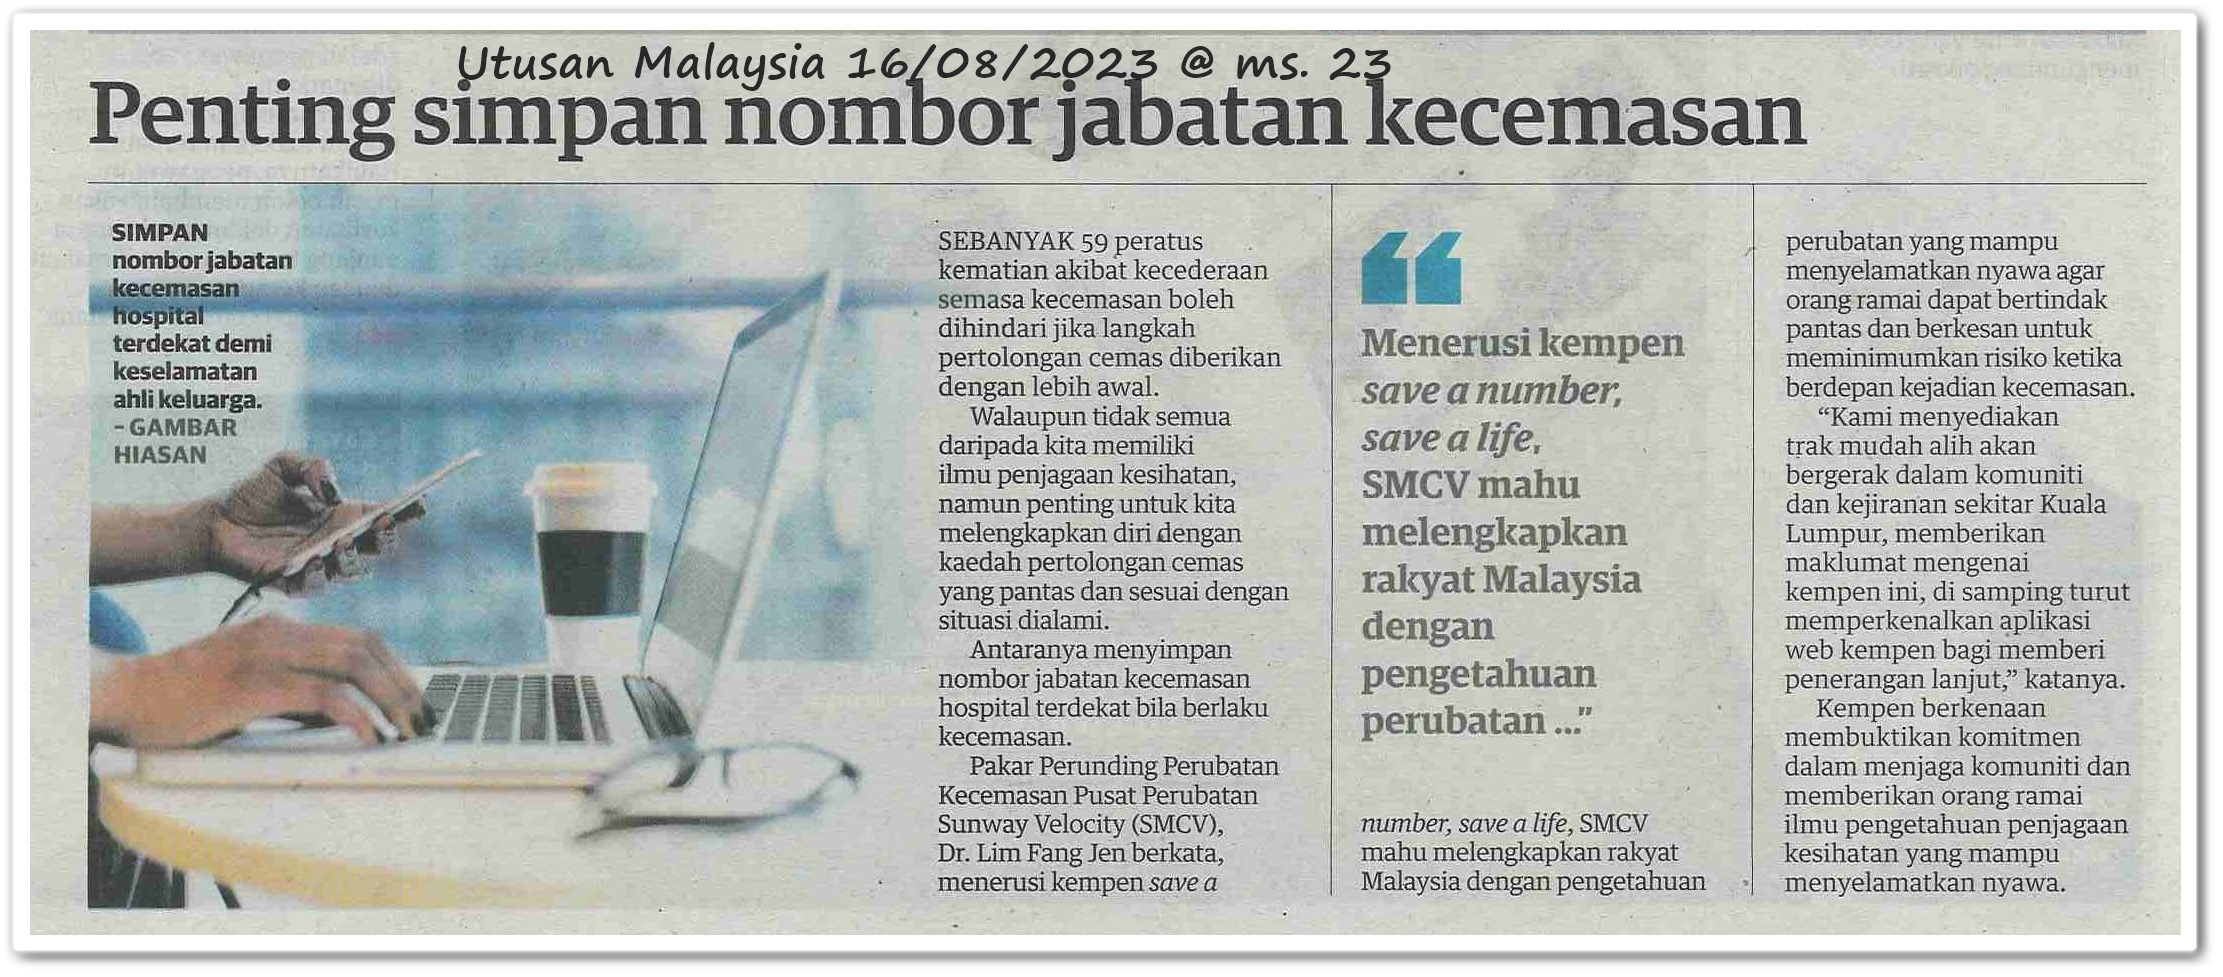 Penting simpan nombor jabatan kecemasan - Keratan akhbar Utusan Malaysia 16 Ogos 2023